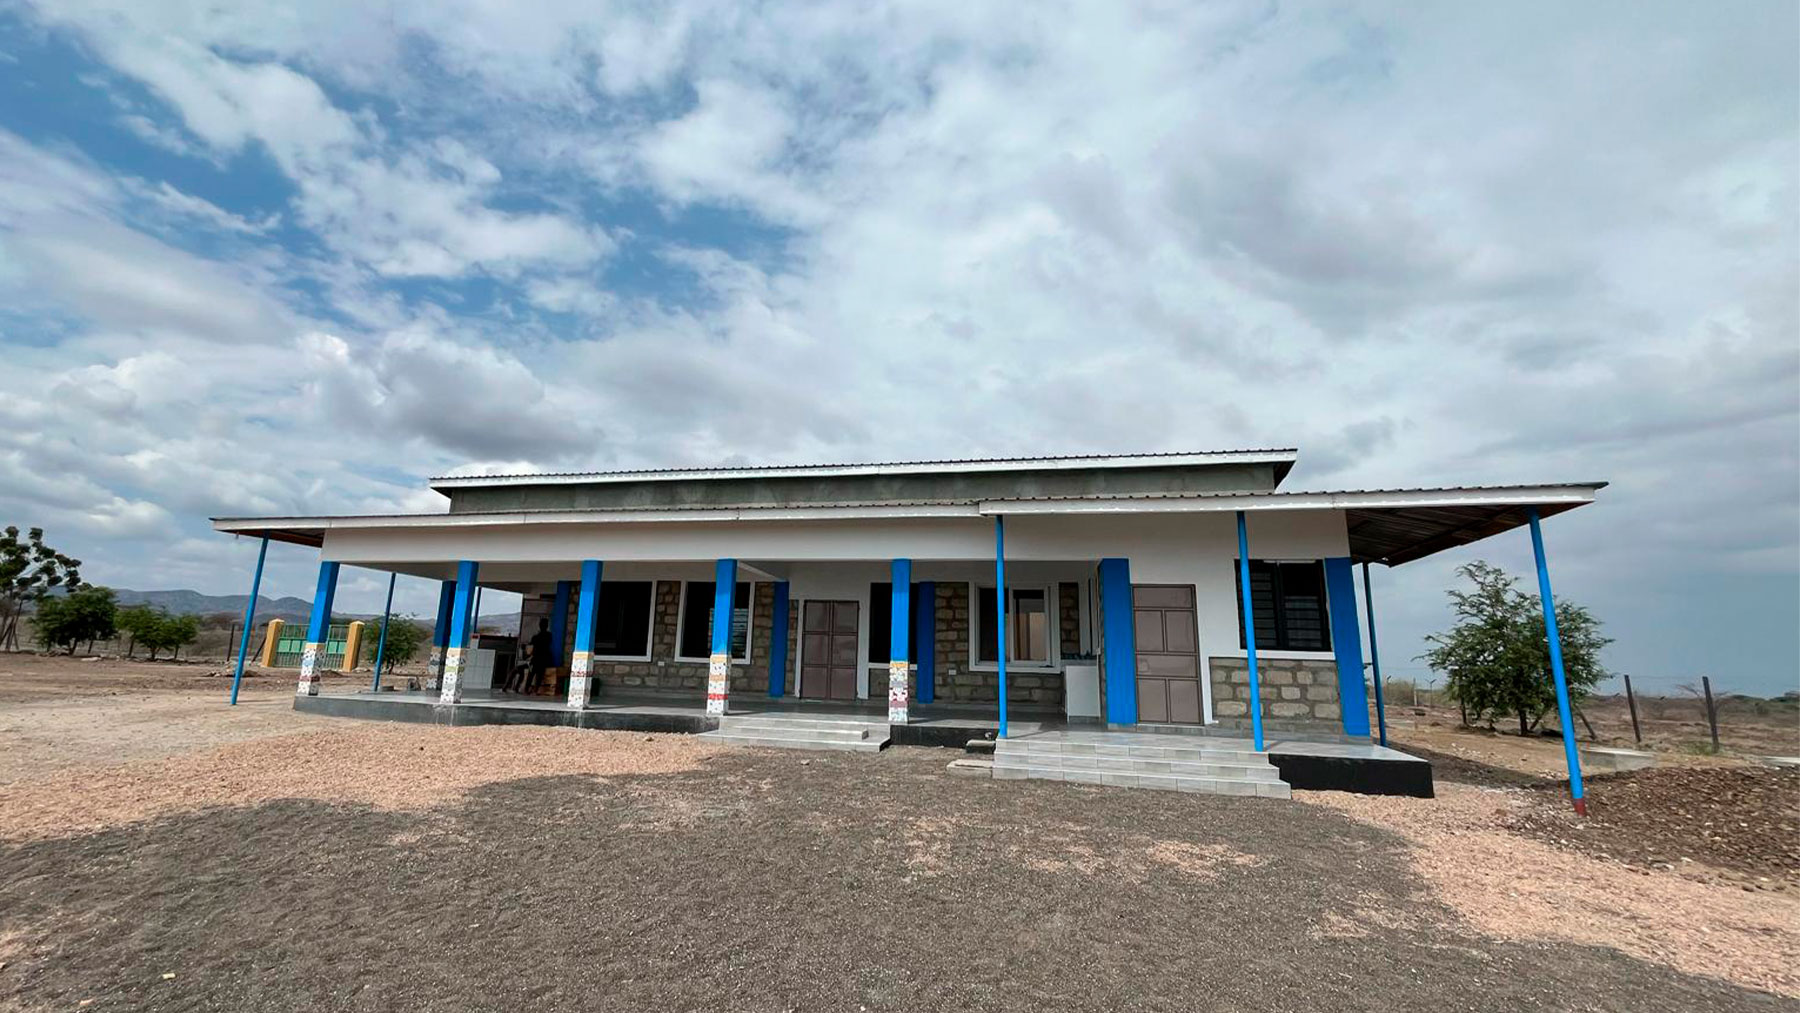 Saints Cosmes & Damian Derma Nariokotome Mission es un laboratorio dermatológico en la región de Turkana.